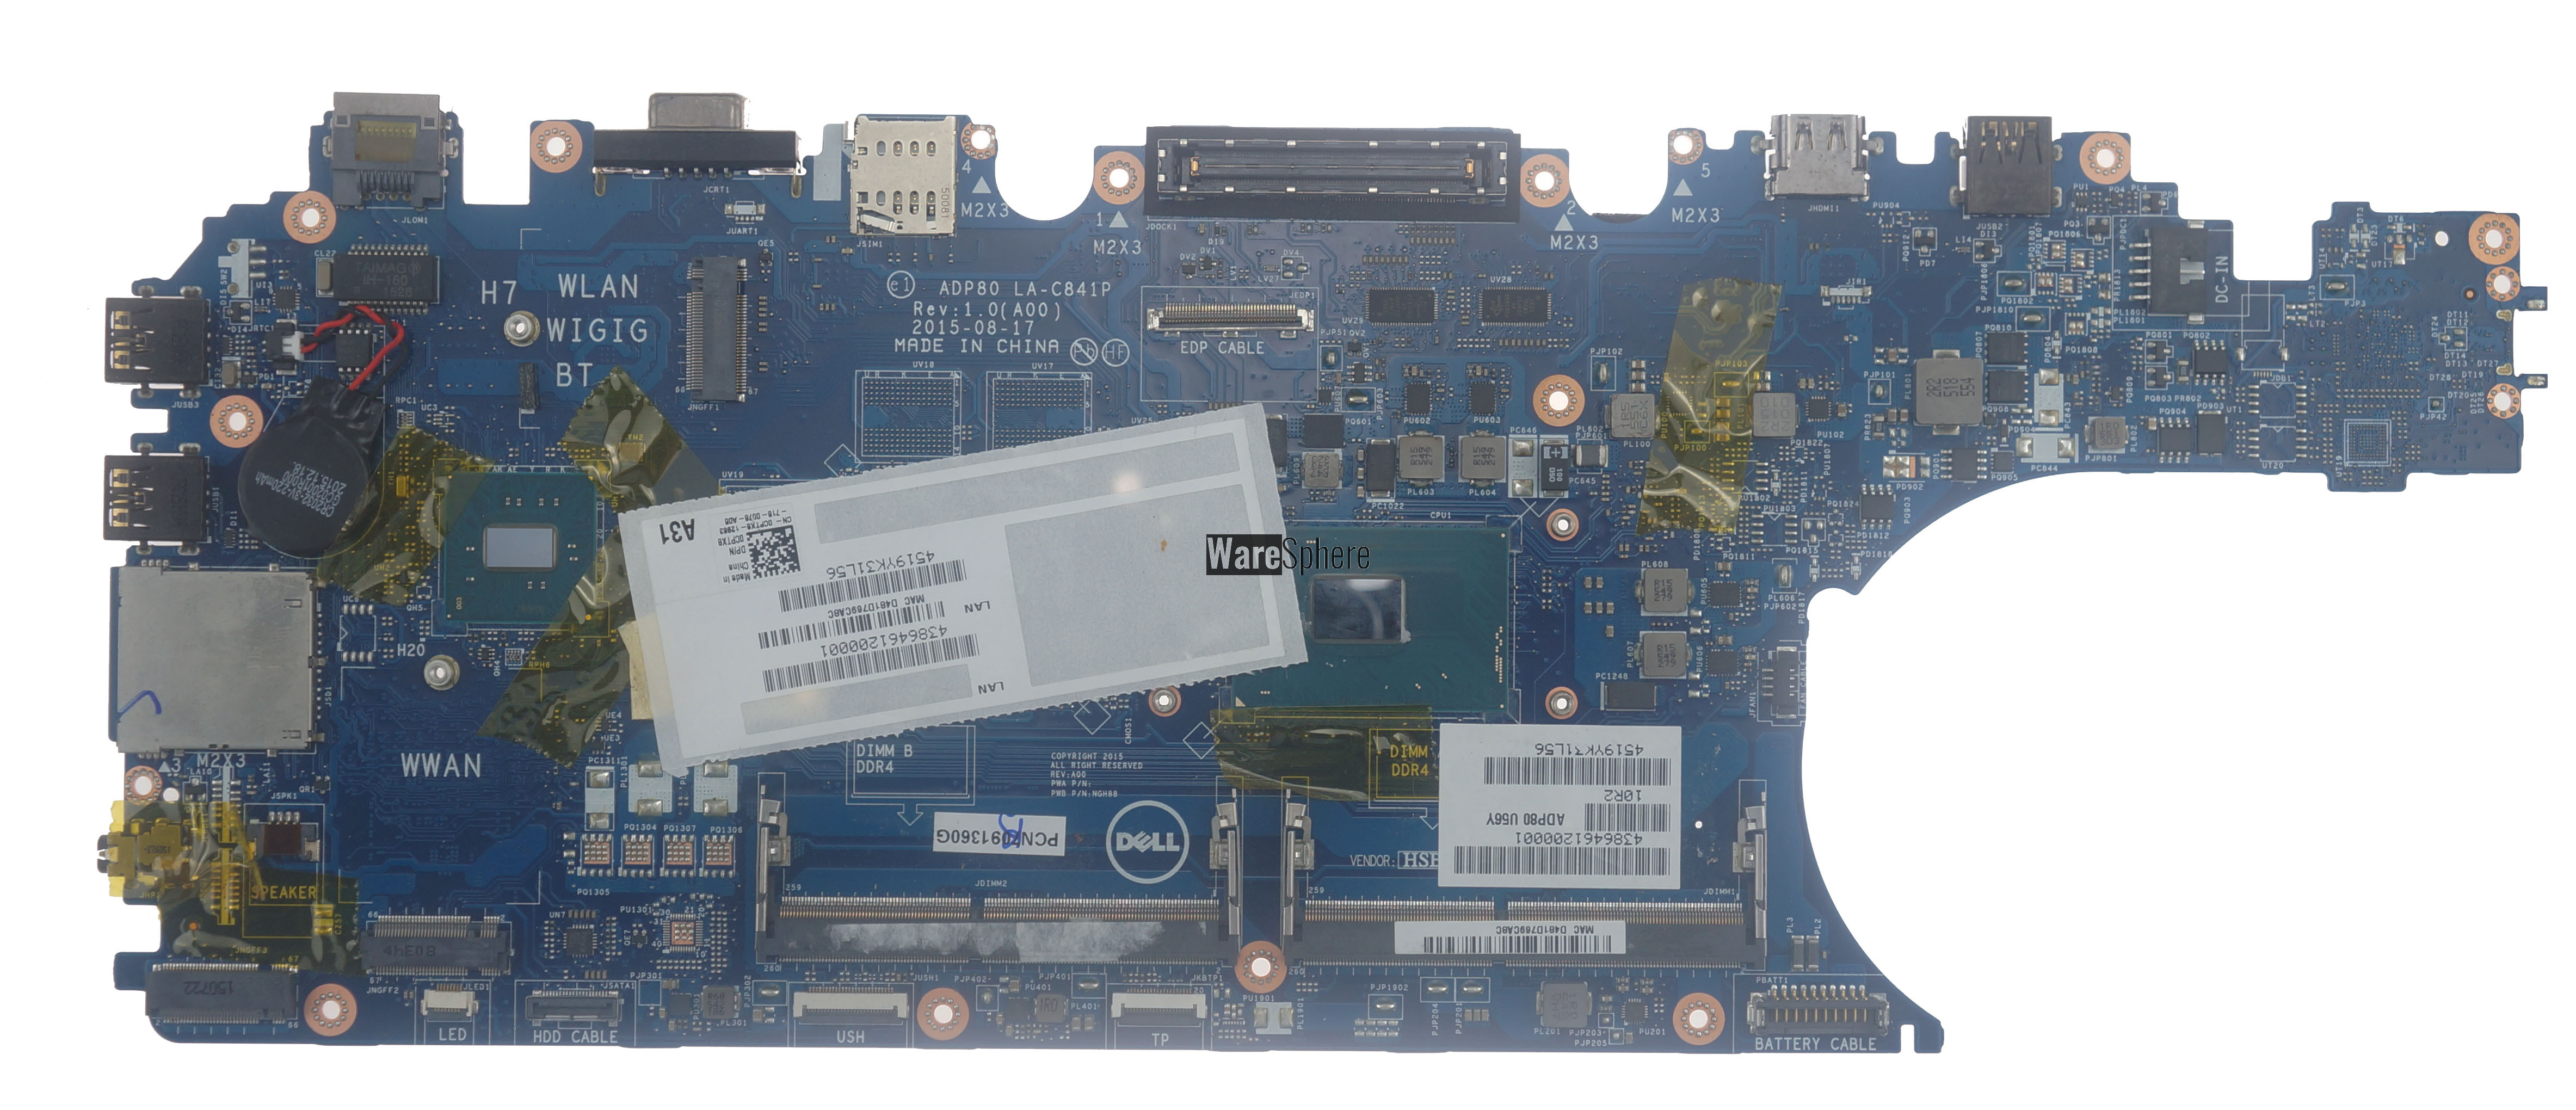 Motherboard i5-6440 for Dell Latitude E5570 CPTX8 0CPTX8 LA-C841P